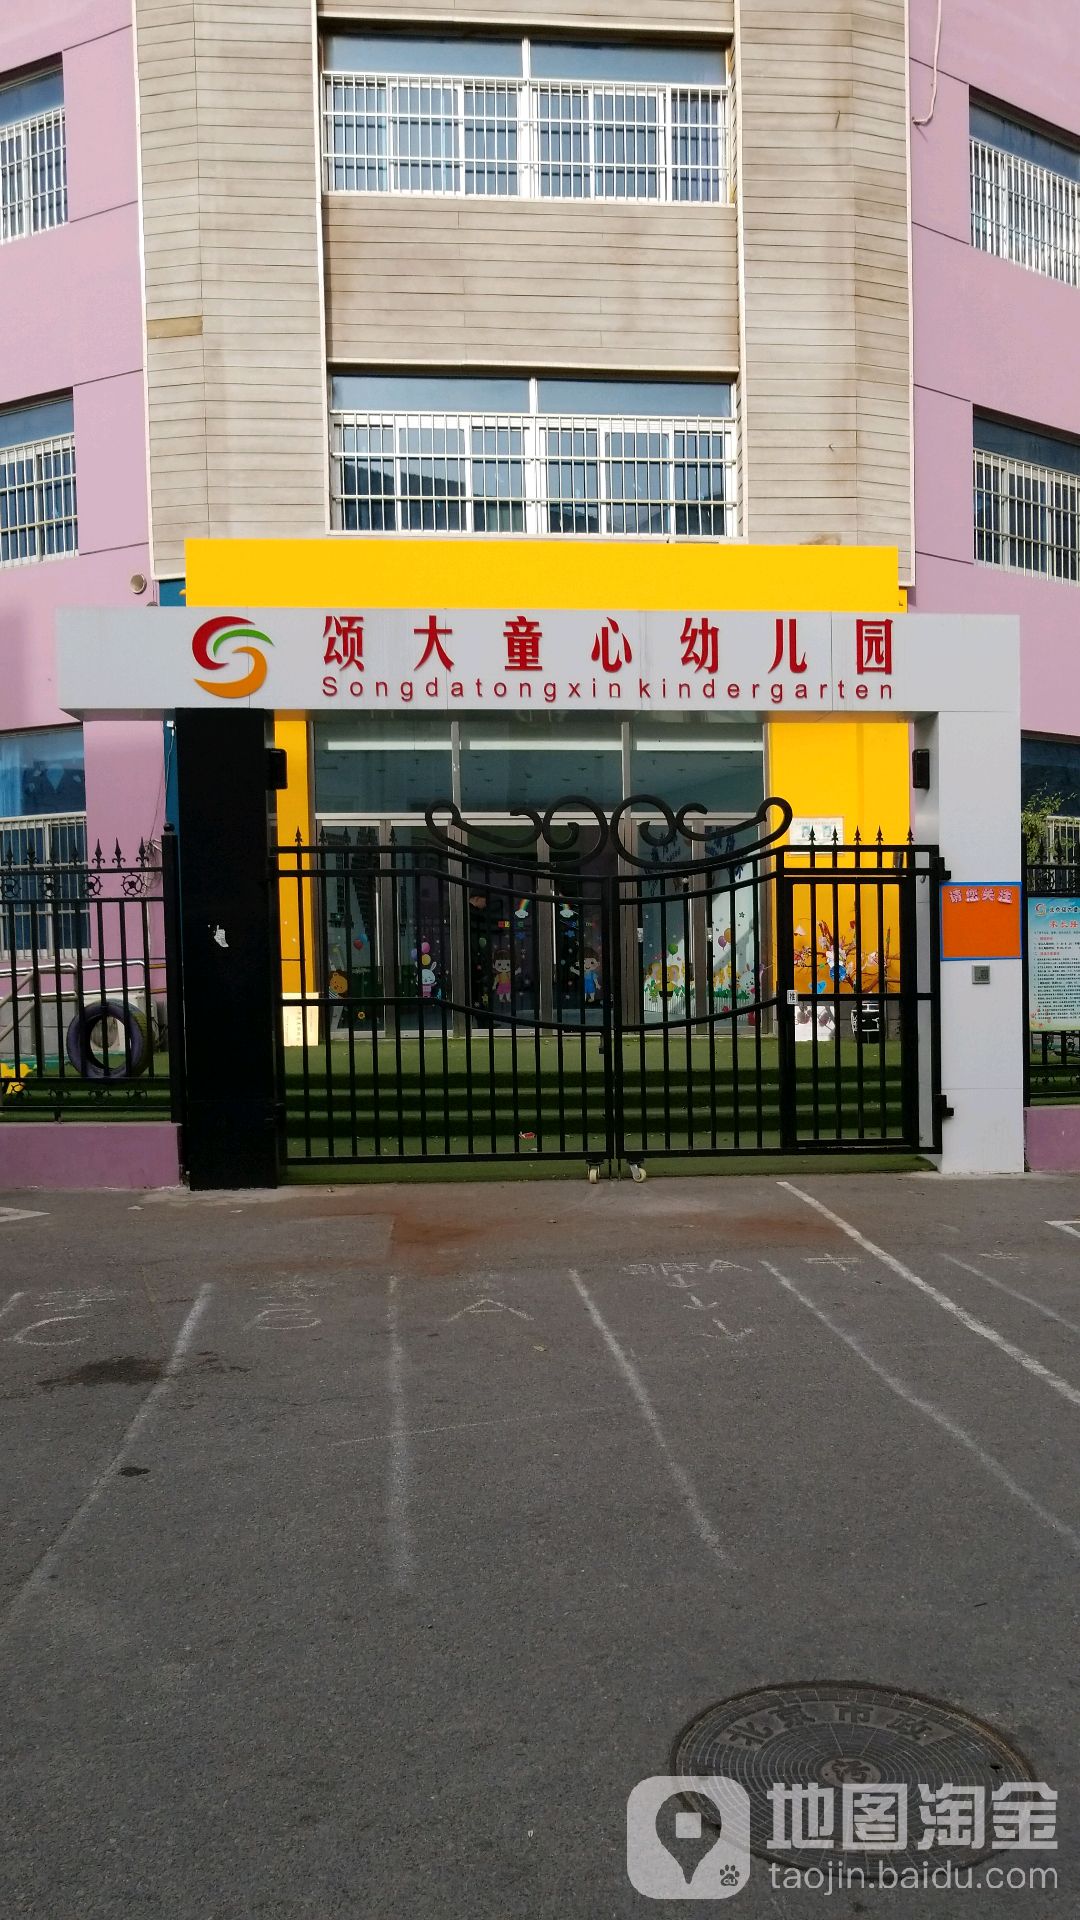 北京市海淀区颂大童心幼儿园